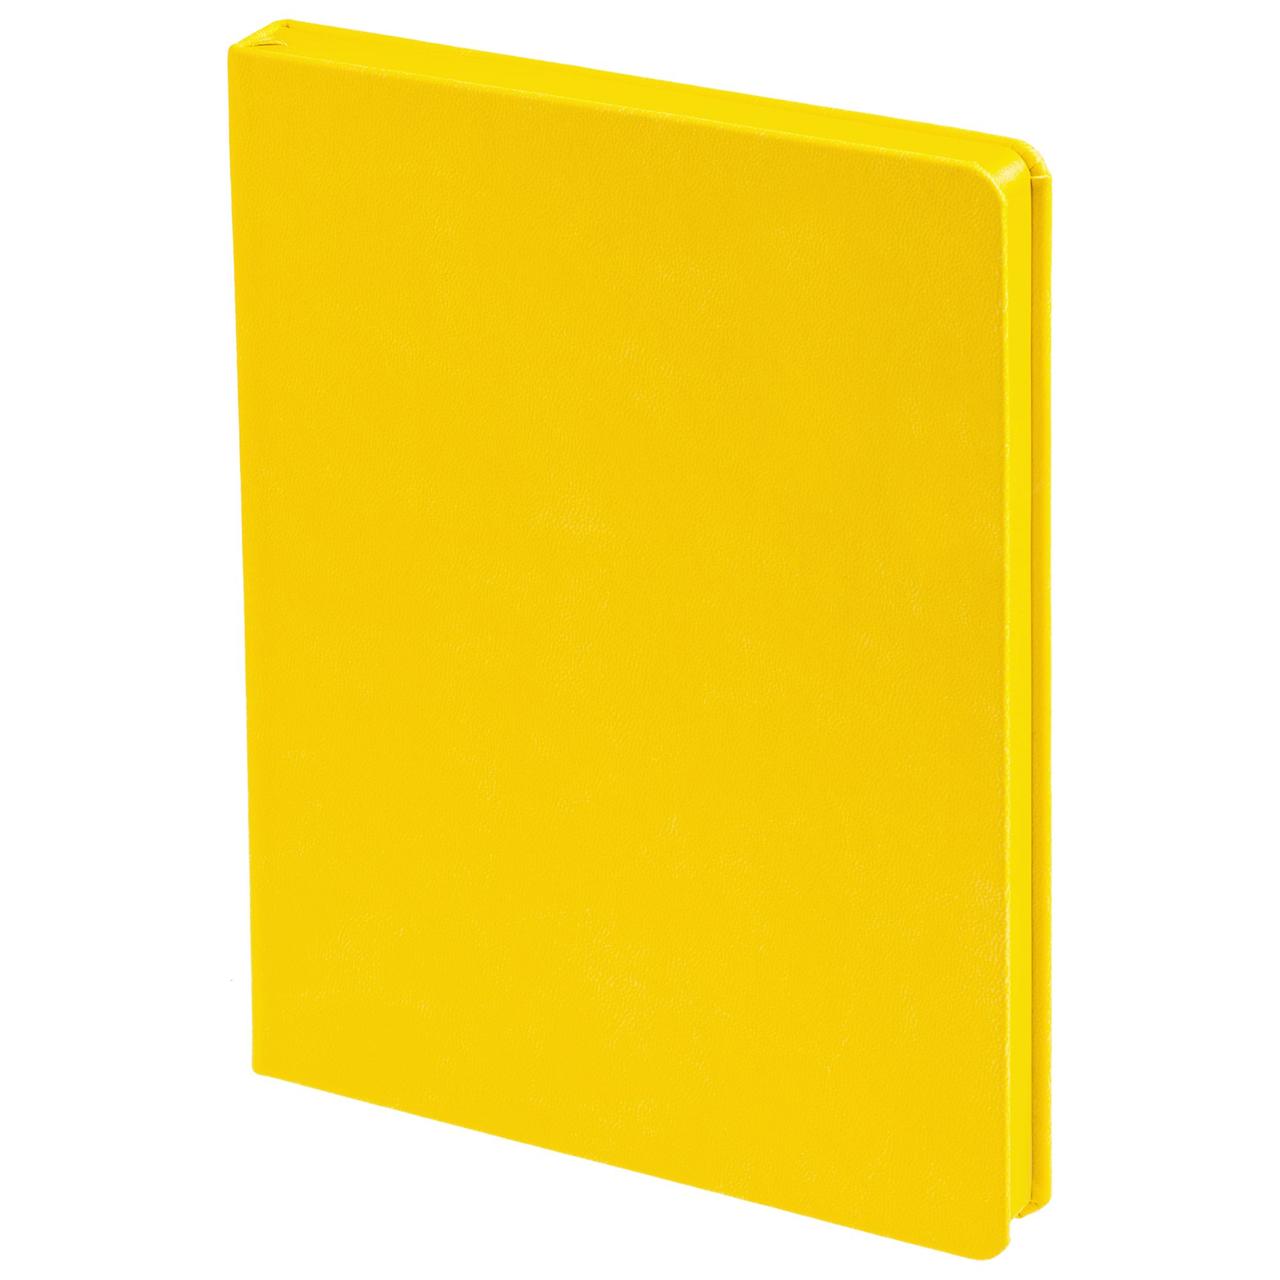 Ежедневник Brand Tone, недатированный, желтый (артикул 17882.80), фото 1